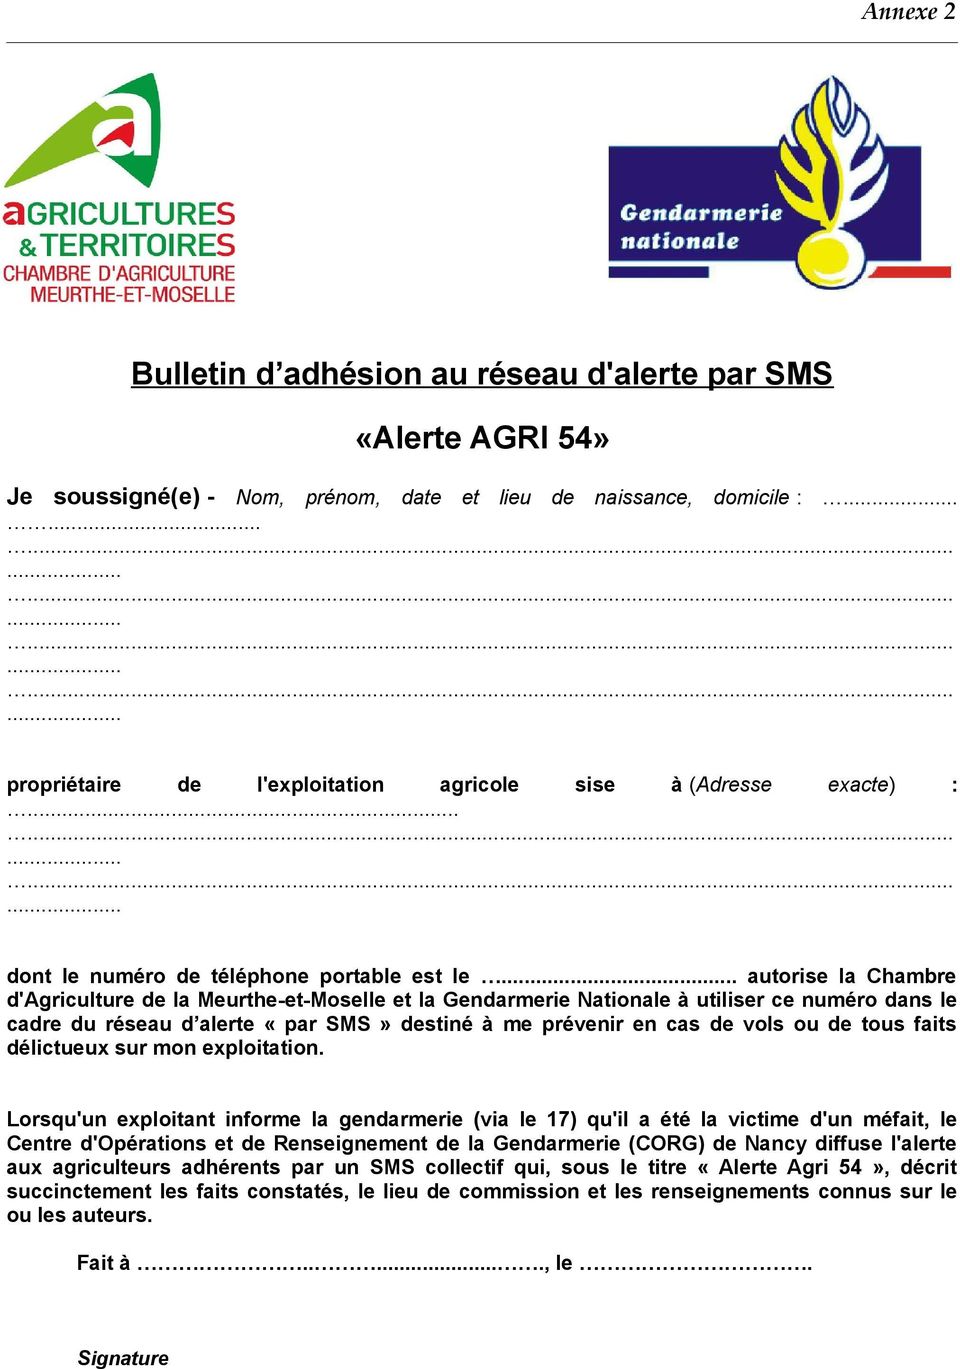 autorise la Chambre d'agriculture de la Meurthe-et-Moselle et la Gendarmerie Nationale à utiliser ce numéro dans le cadre du réseau d alerte «par SMS» destiné à me prévenir en cas de vols ou de tous